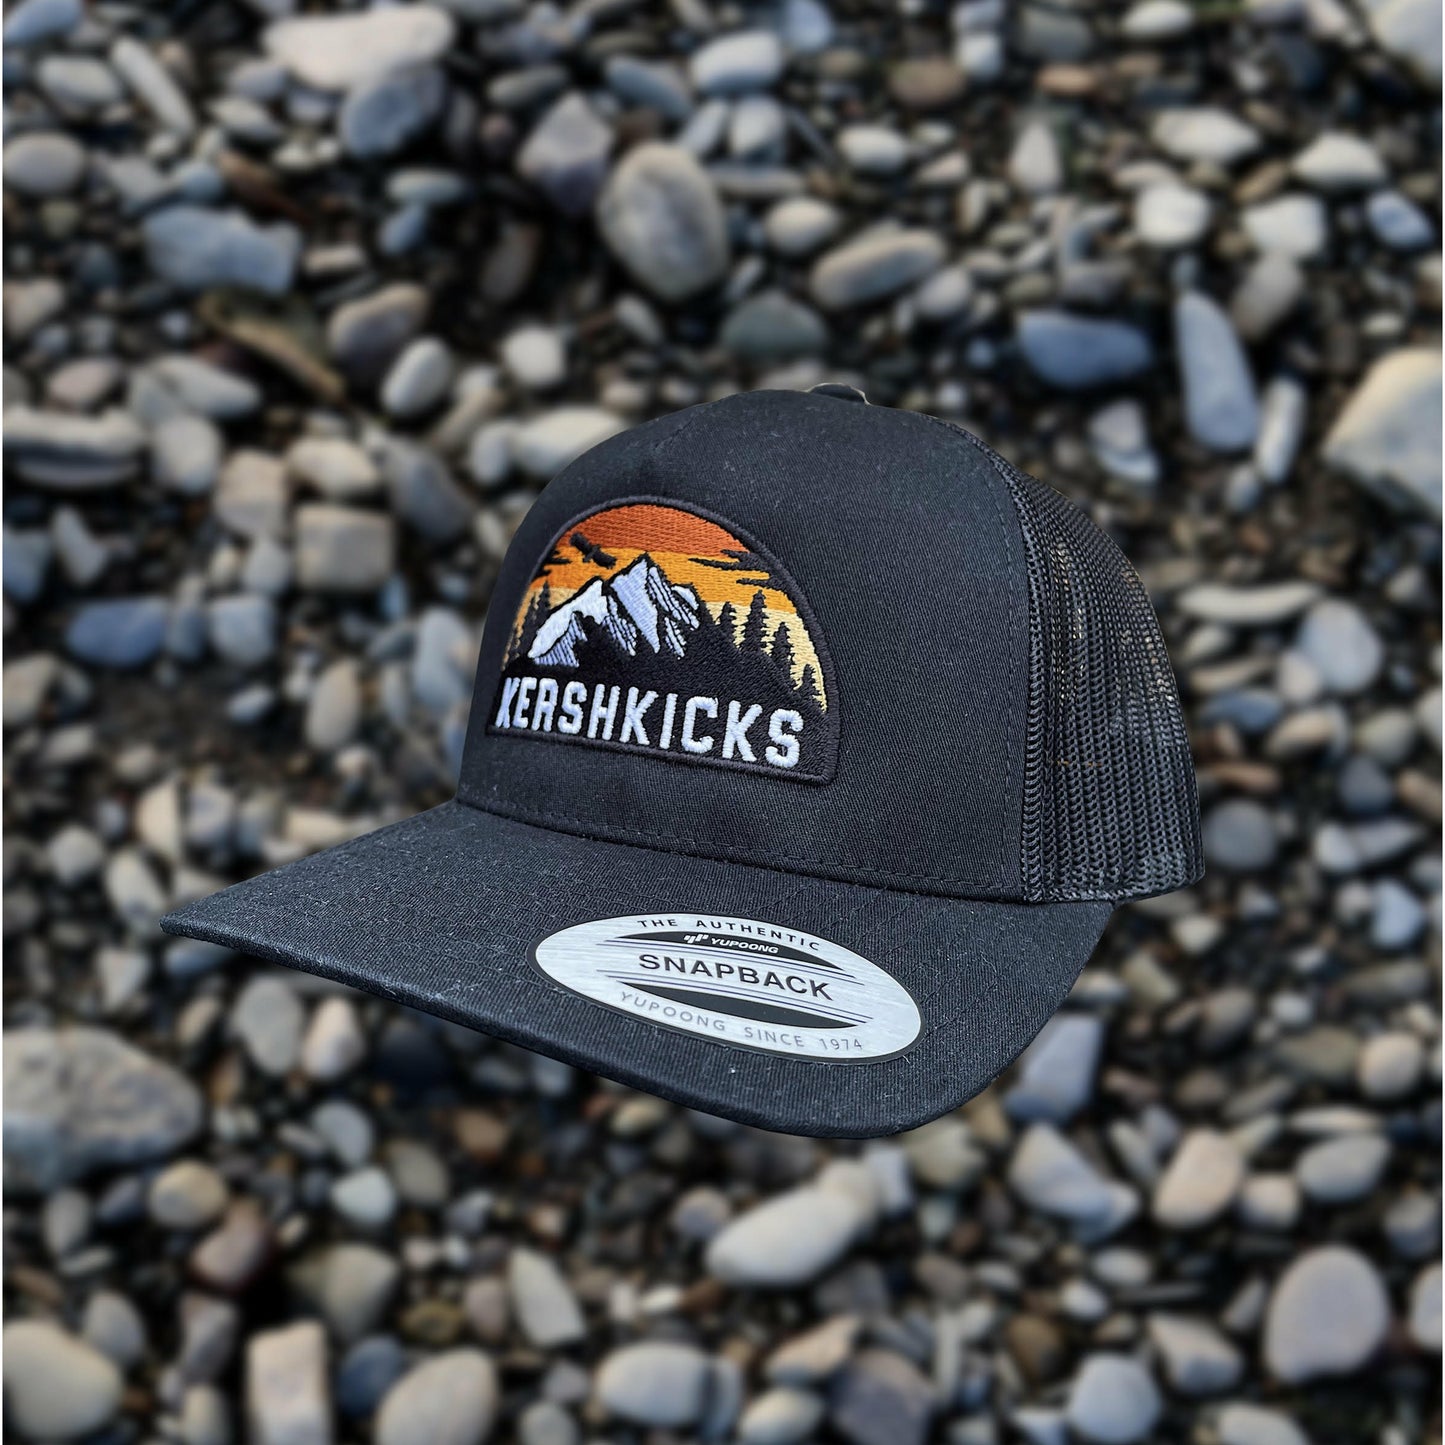 KERSHKICKS MOUNTAIN CAP from KershKicks